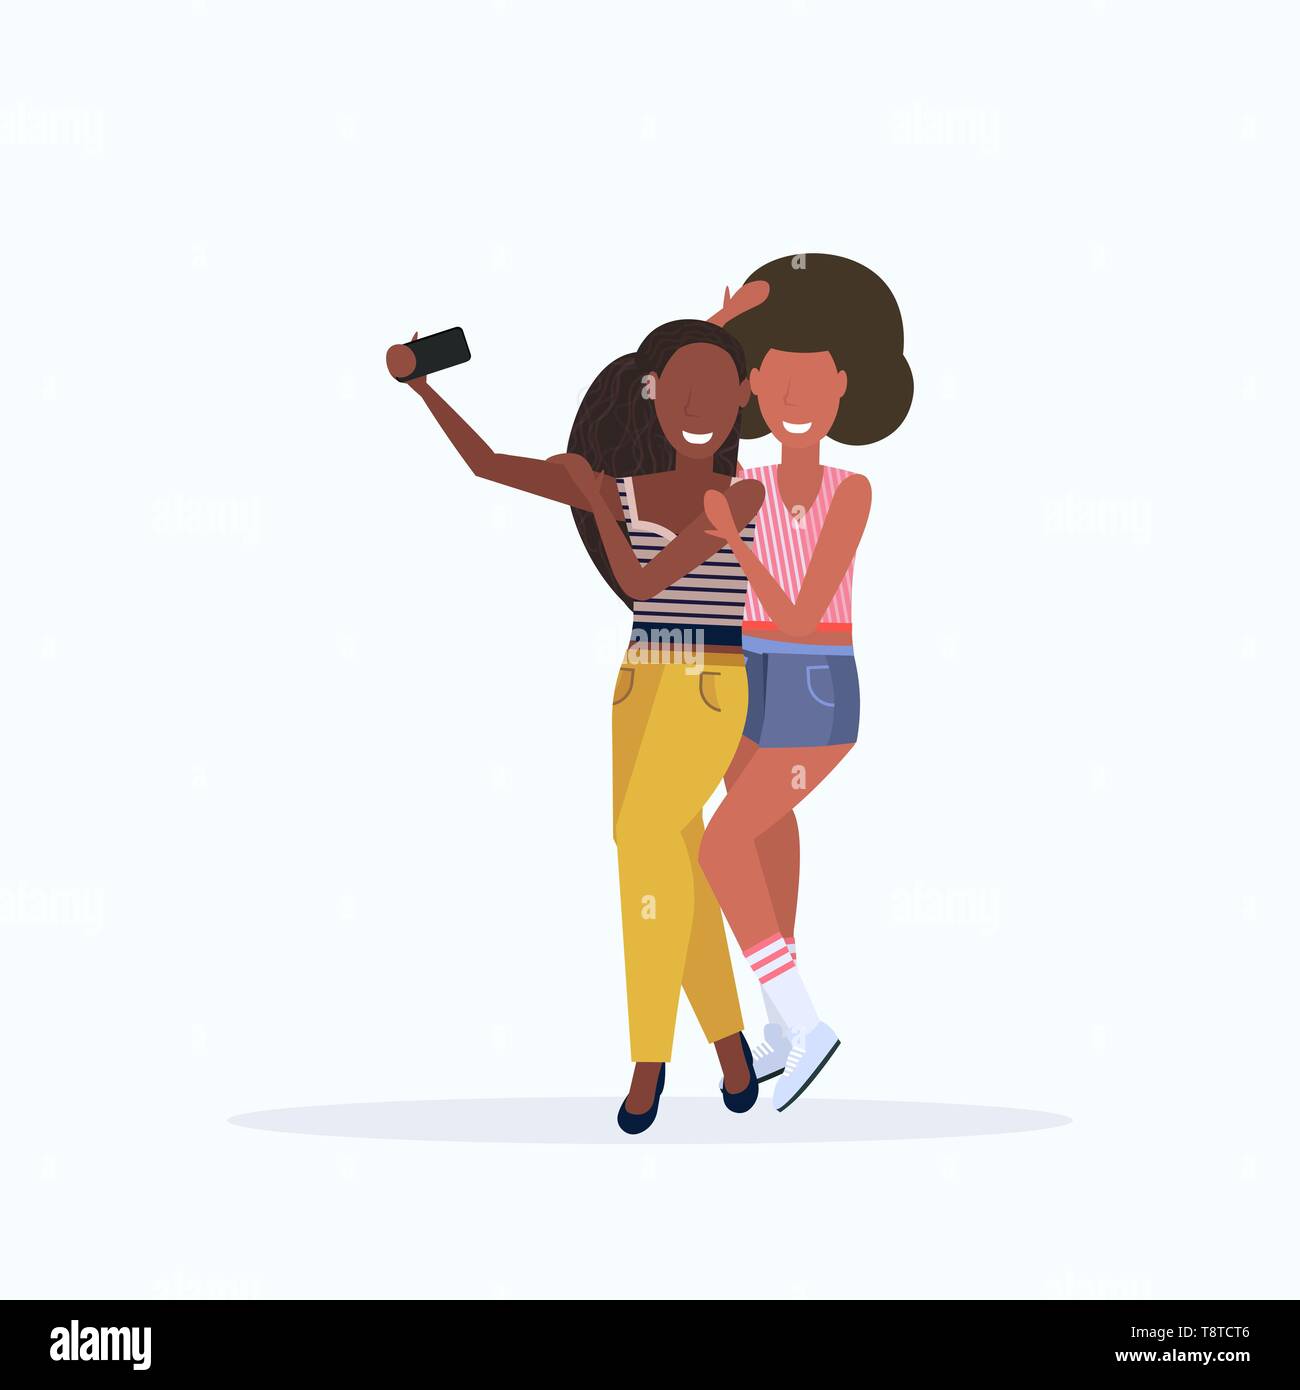 Deux femmes prenant des photos sur l'appareil photo du smartphone selfies african american female personnages de standing together posant sur fond blanc télévision pleine Illustration de Vecteur